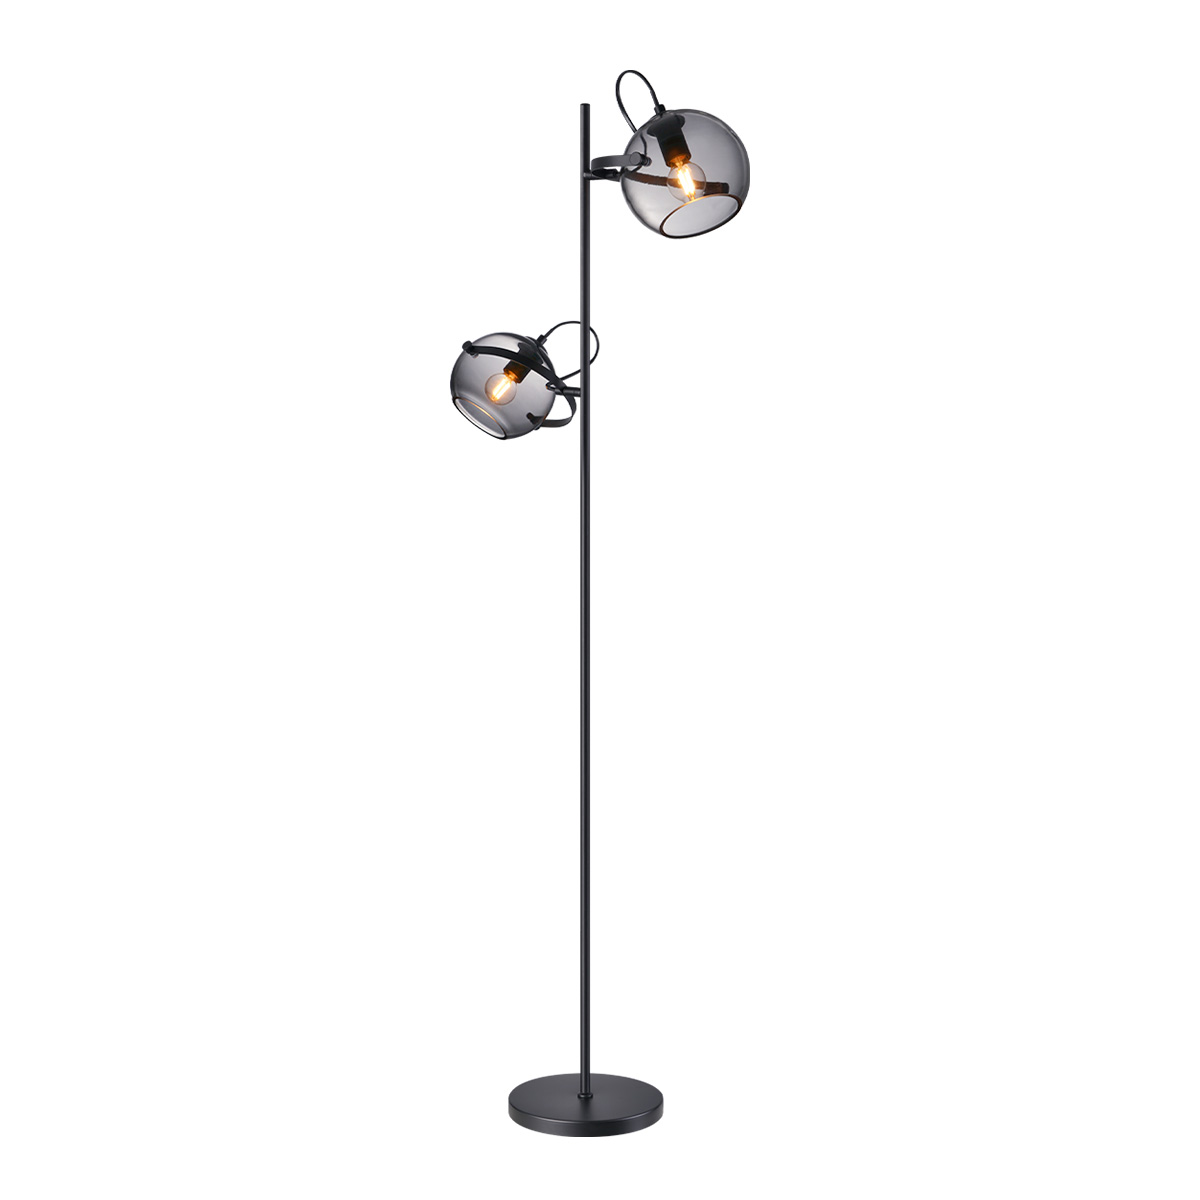 Tangla lighting - TLF7408-02SB - LED Floor lamp 2 Lights - metal + glass - sand black + smoke - night - E14